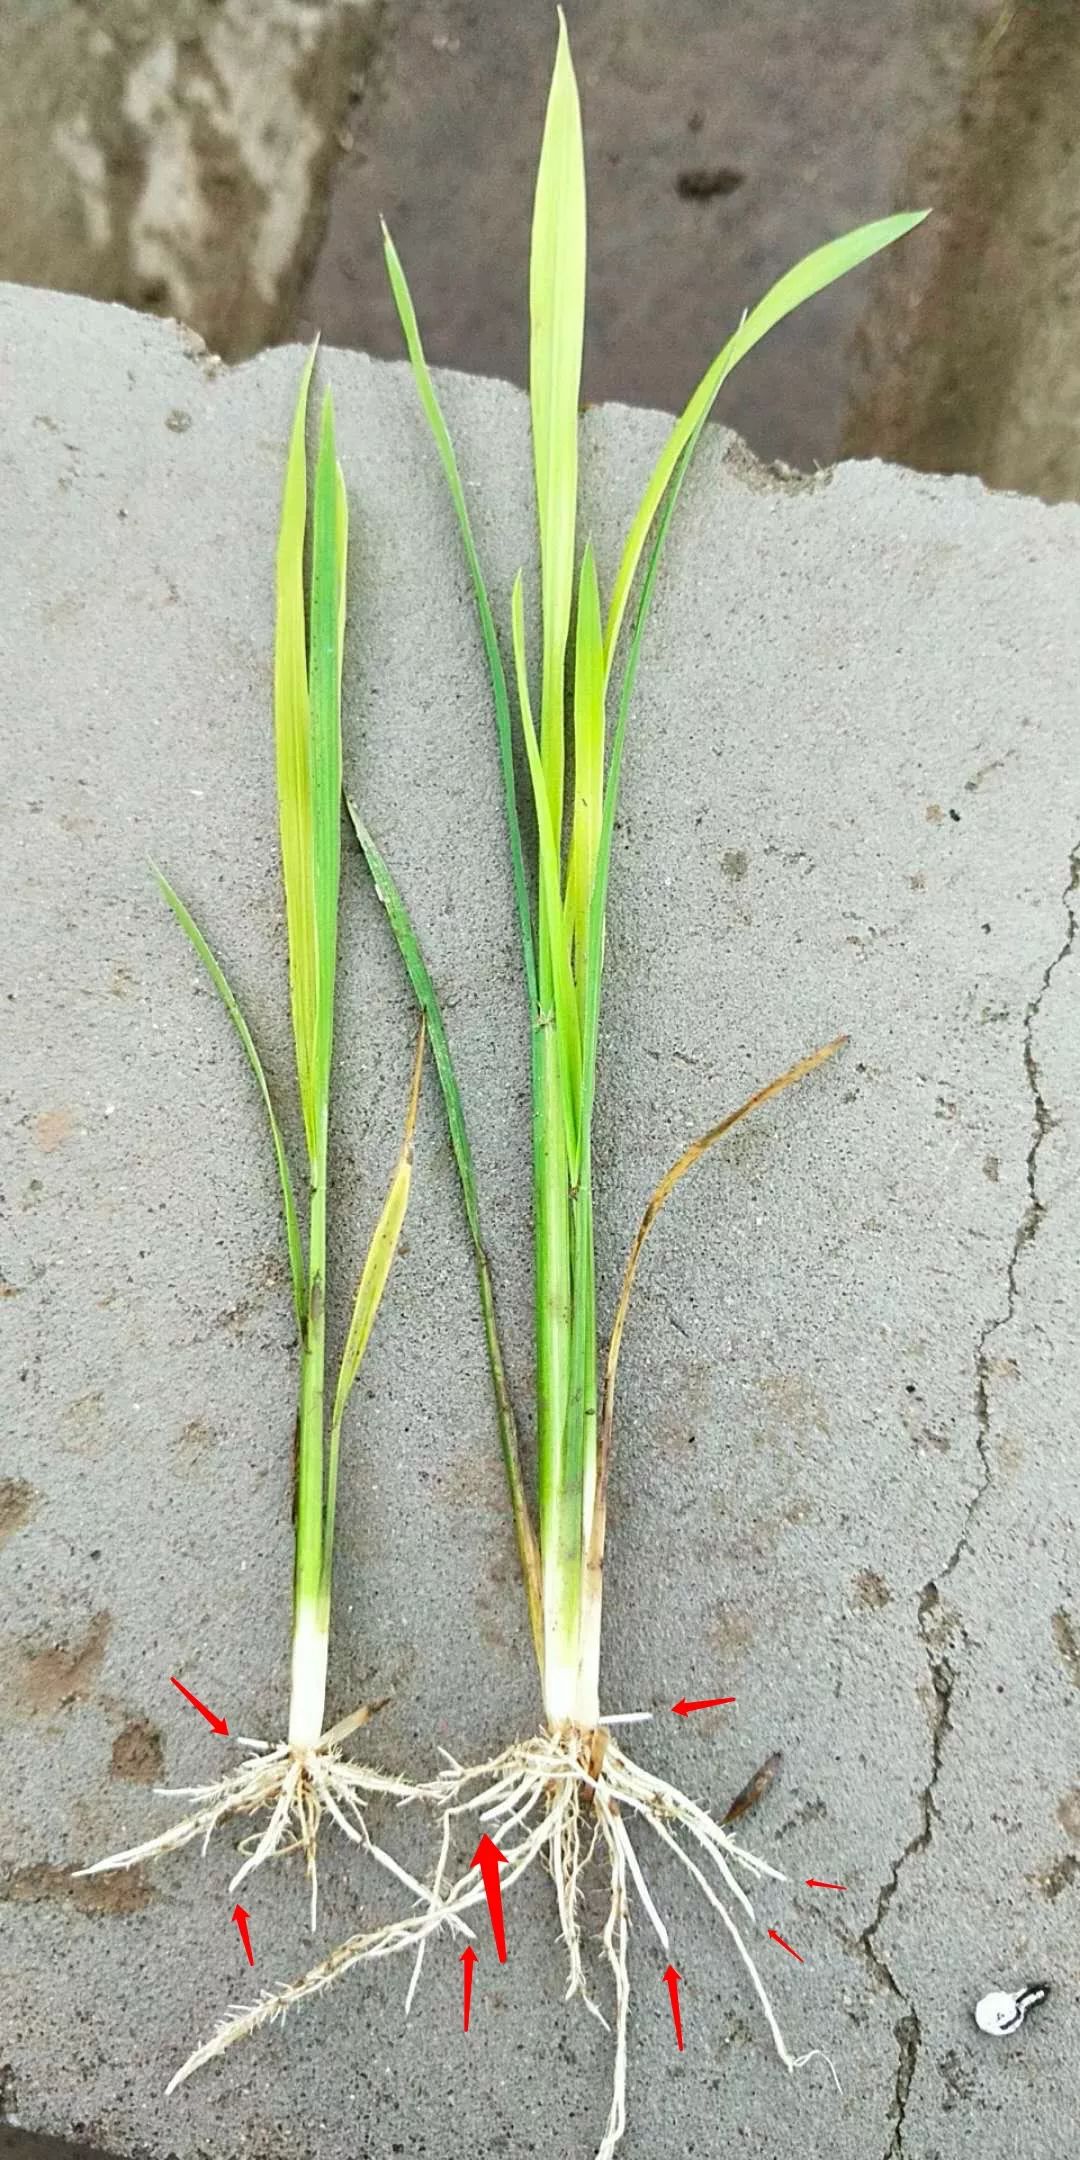 水清:从这张图片看,右侧黄苗有地中茎,应是旱直播稻,播种较深,出苗期